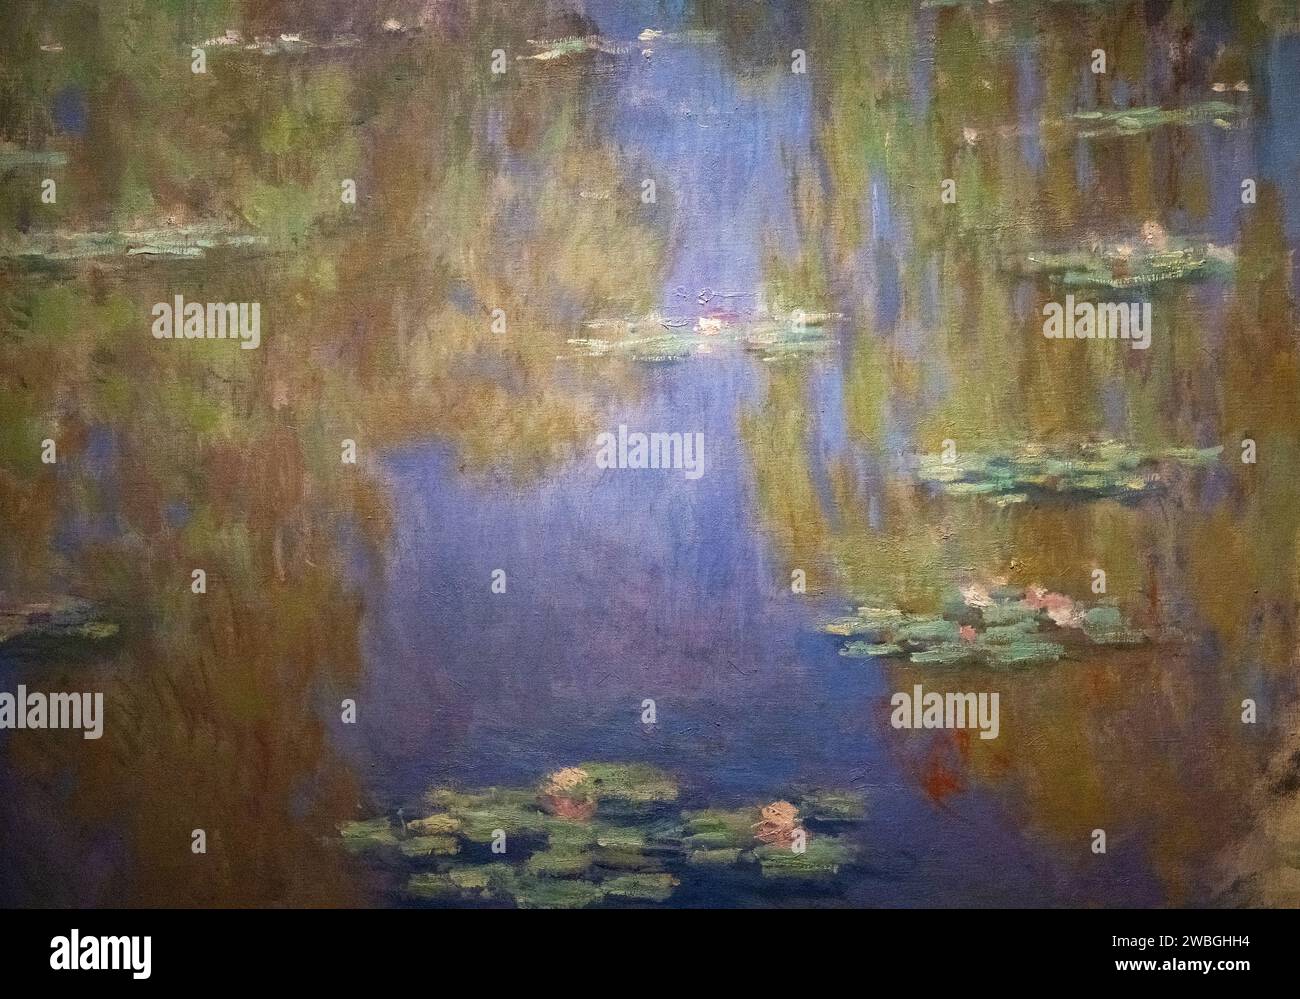 Gemälde "Wasserlilien" von Claude Monet aus dem Jahr 1903 Stockfoto